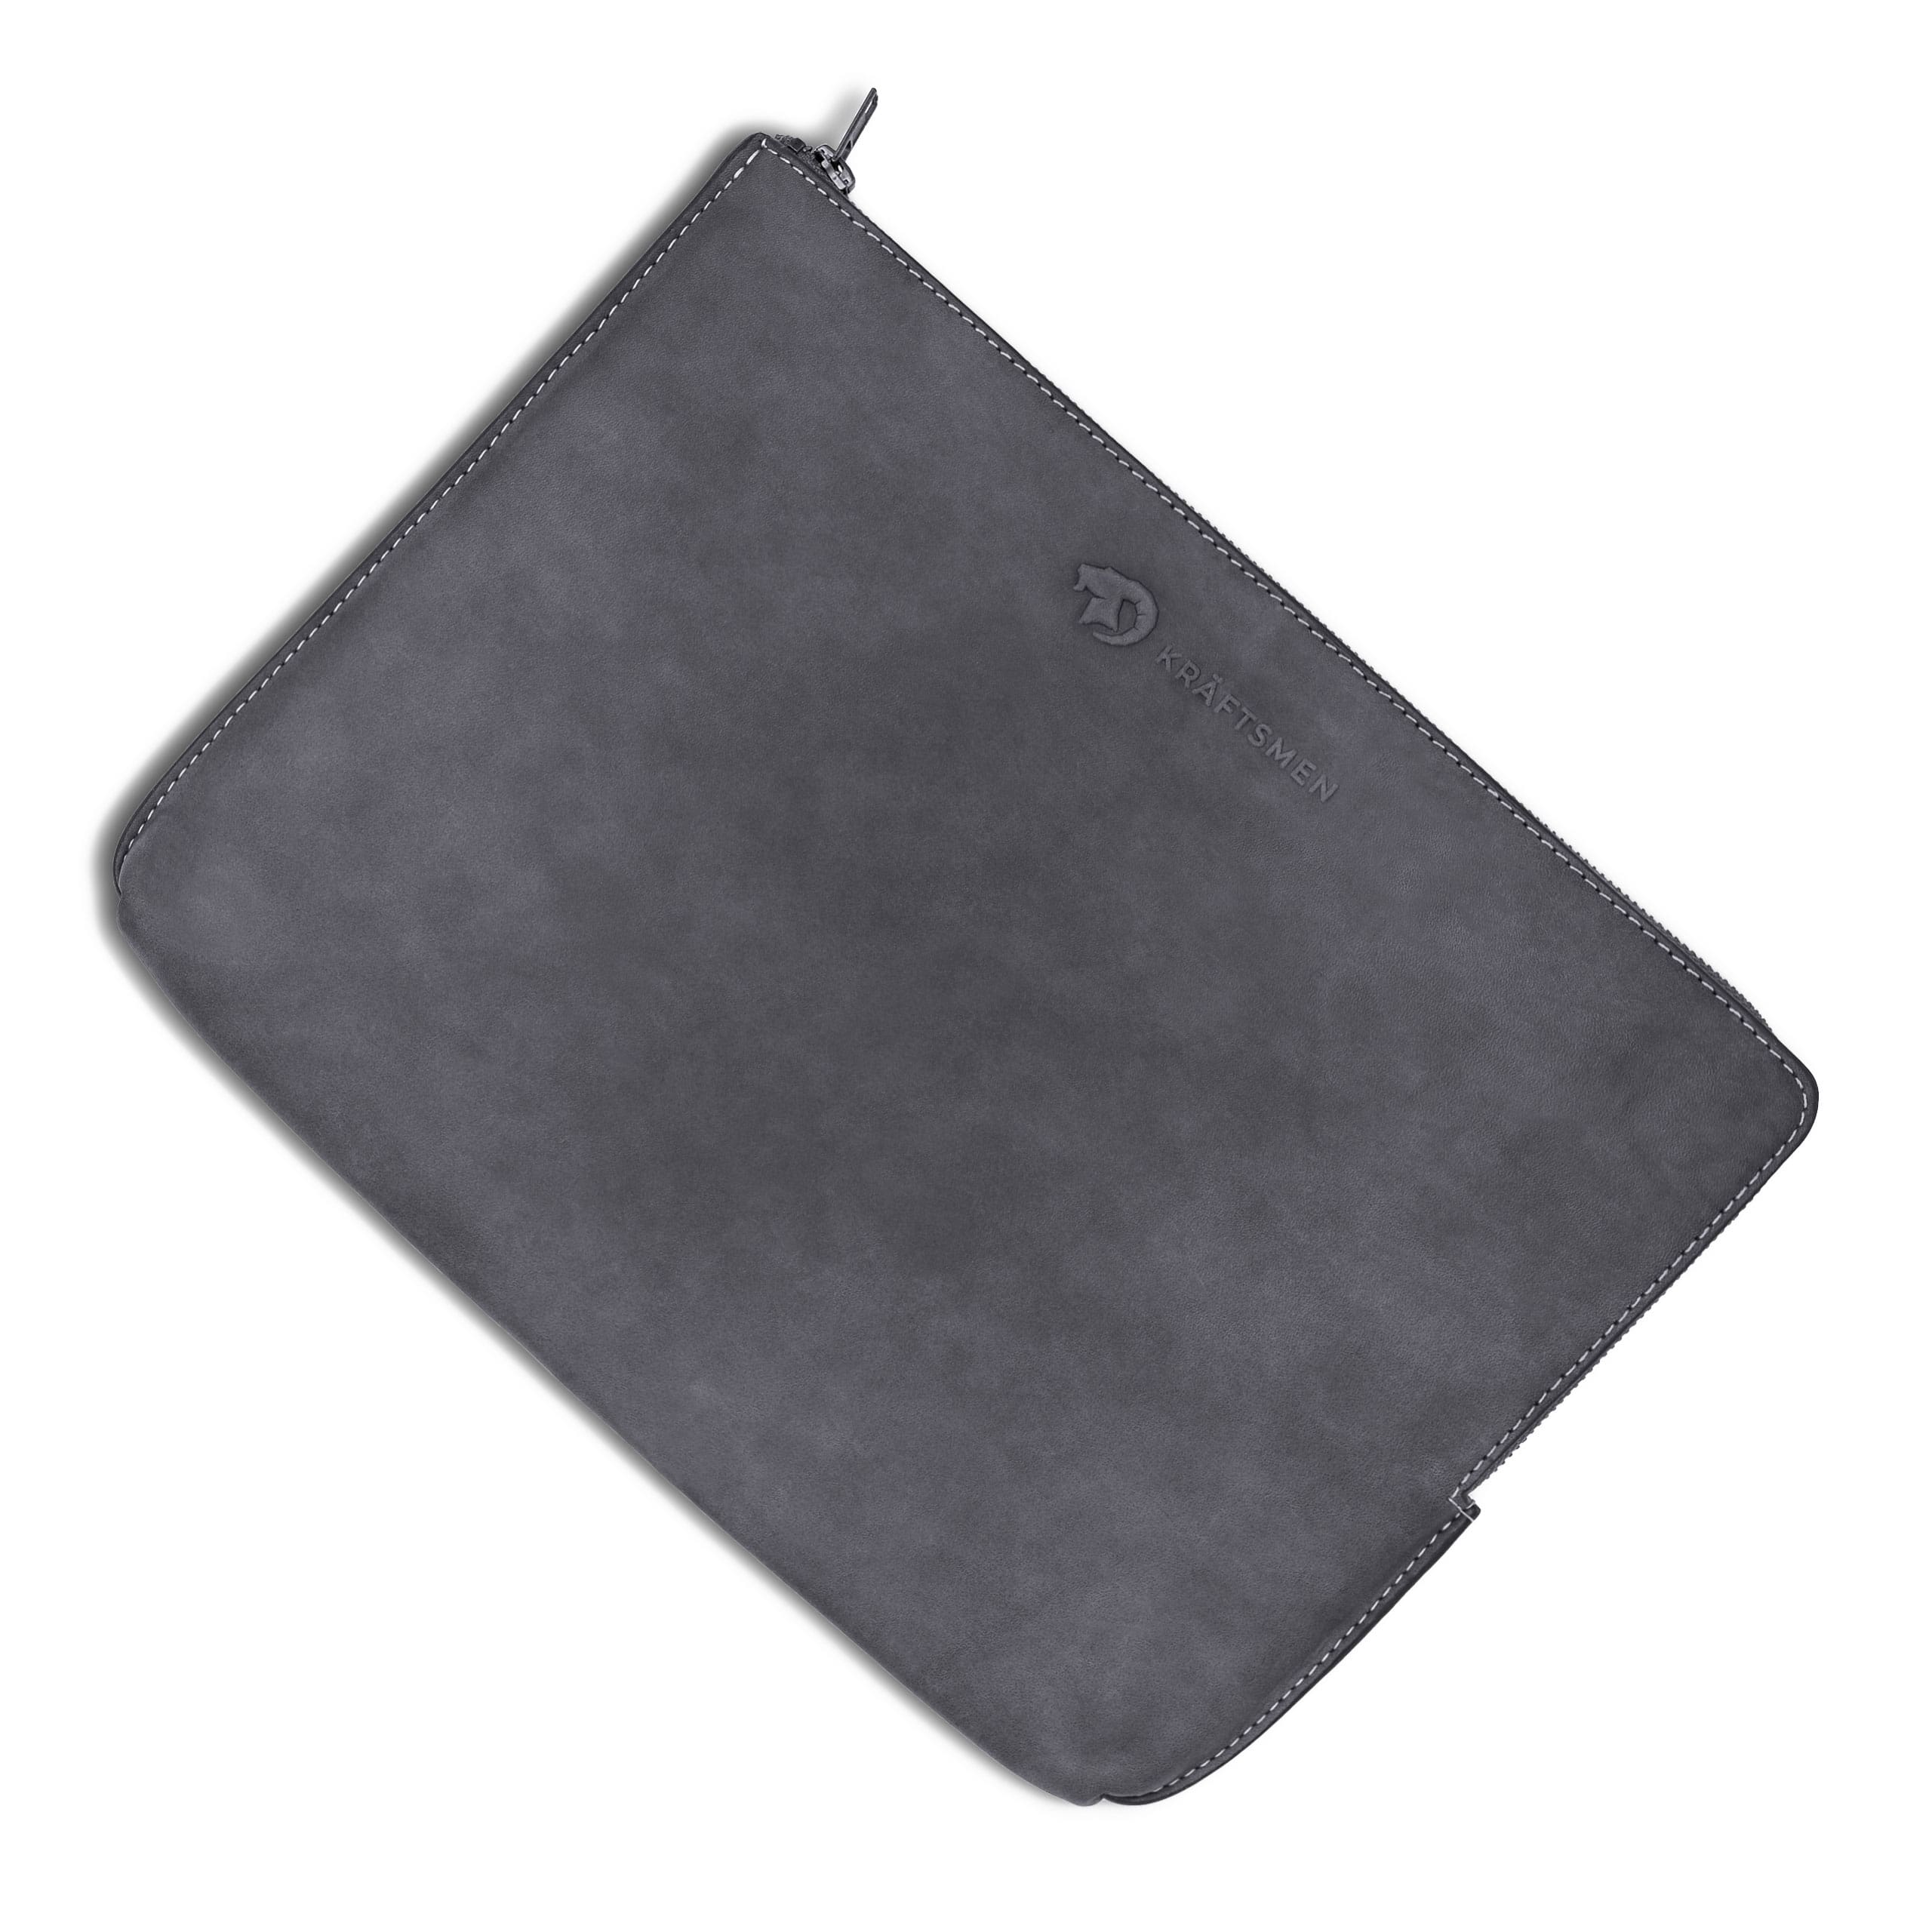 macbook air m2 sleeve